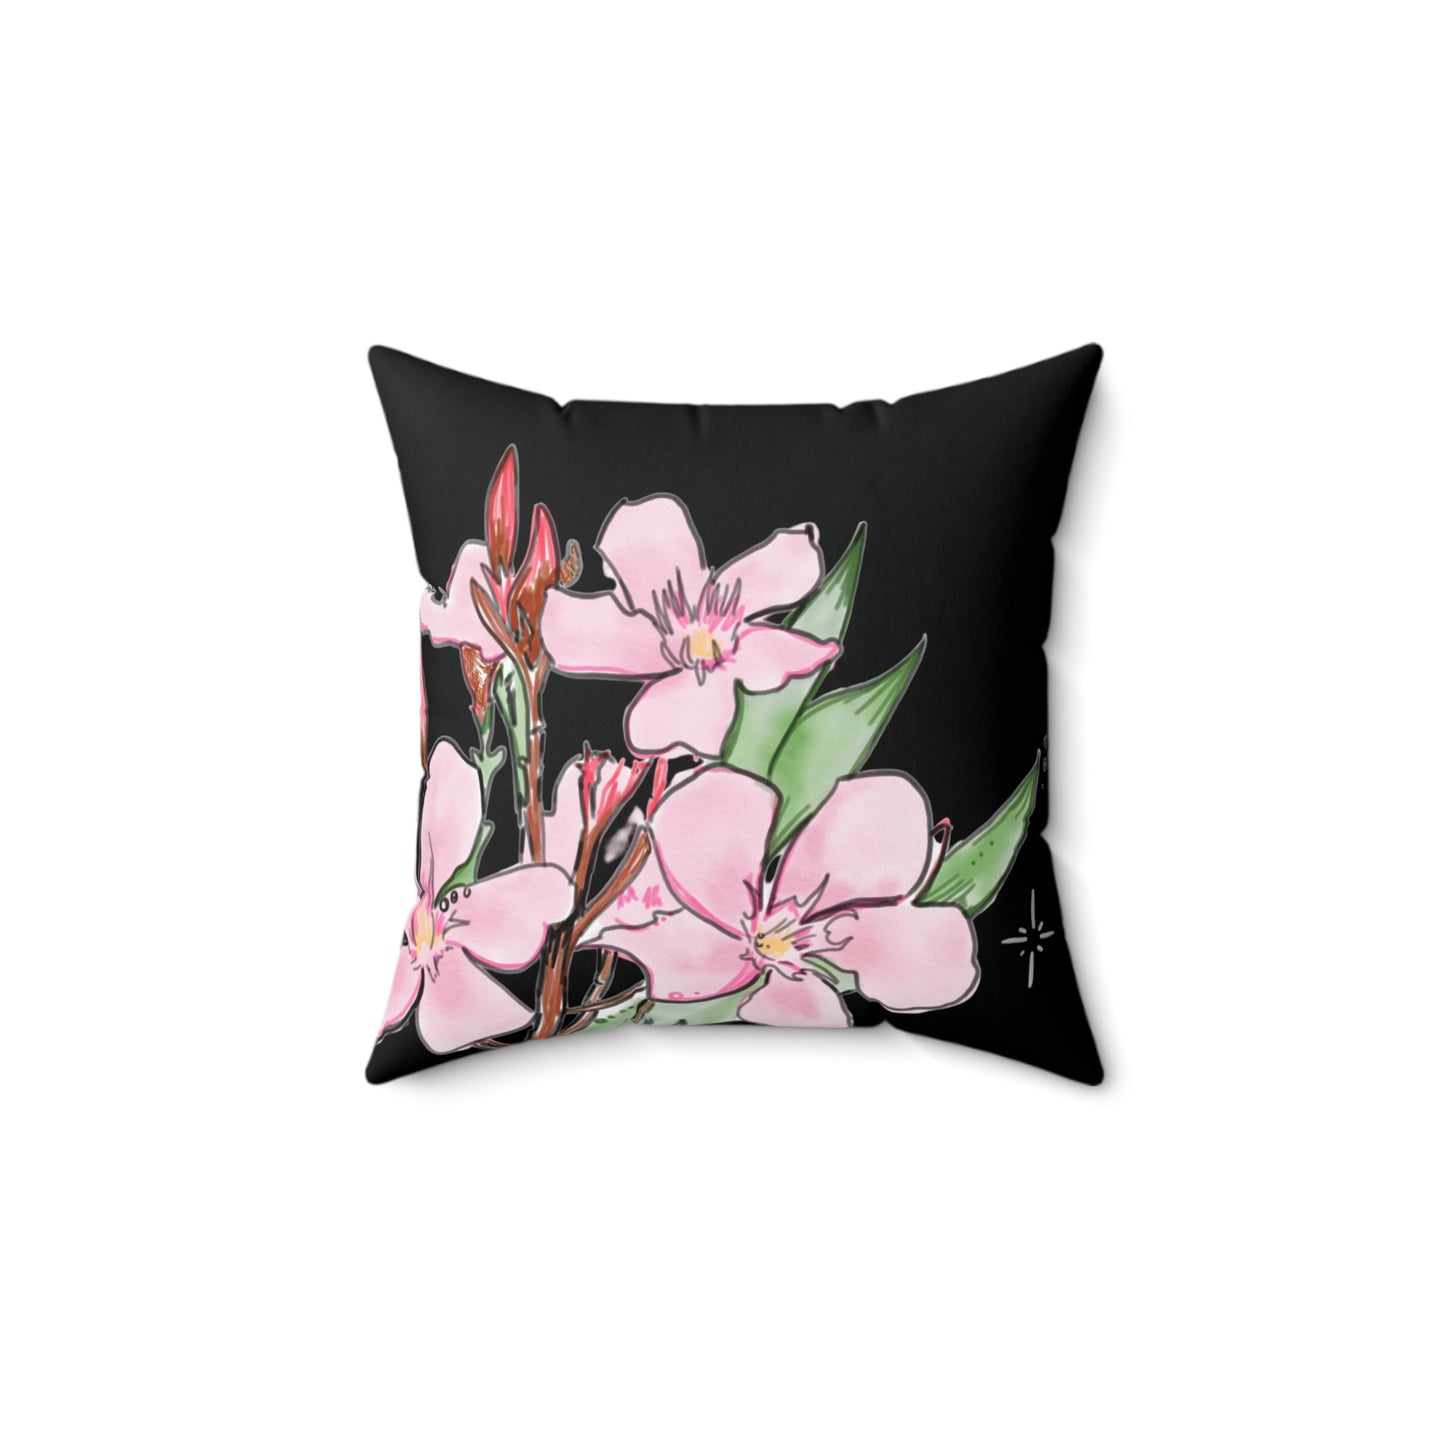 Oleander Kewpie Fae Spun Polyester Square Pillow